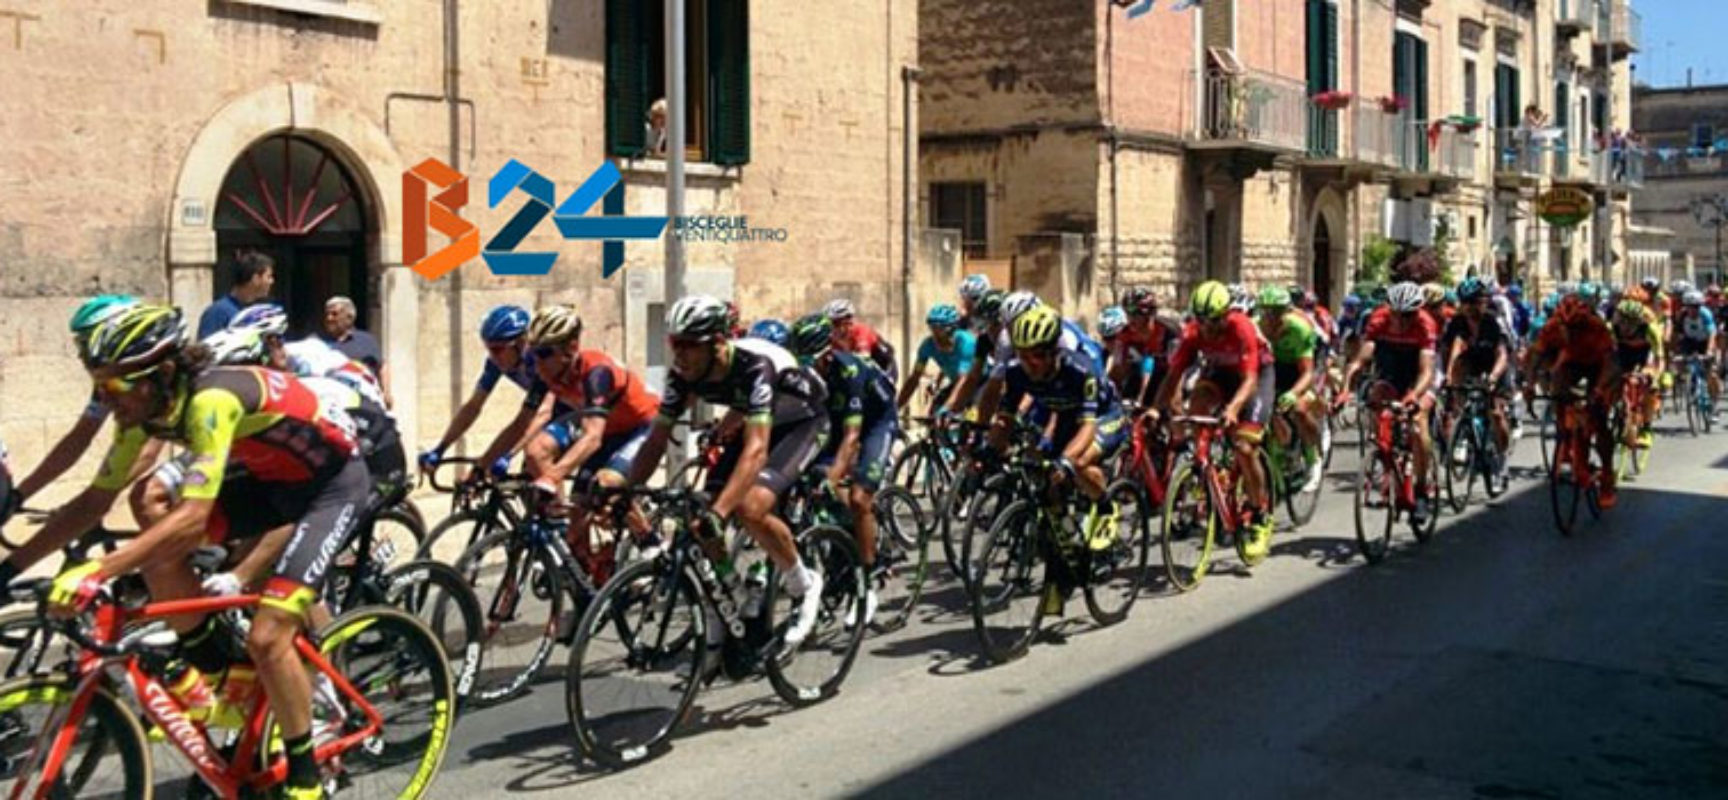 Il Giro d’Italia passa da Bisceglie, limitazioni e divieti previsti / DETTAGLI